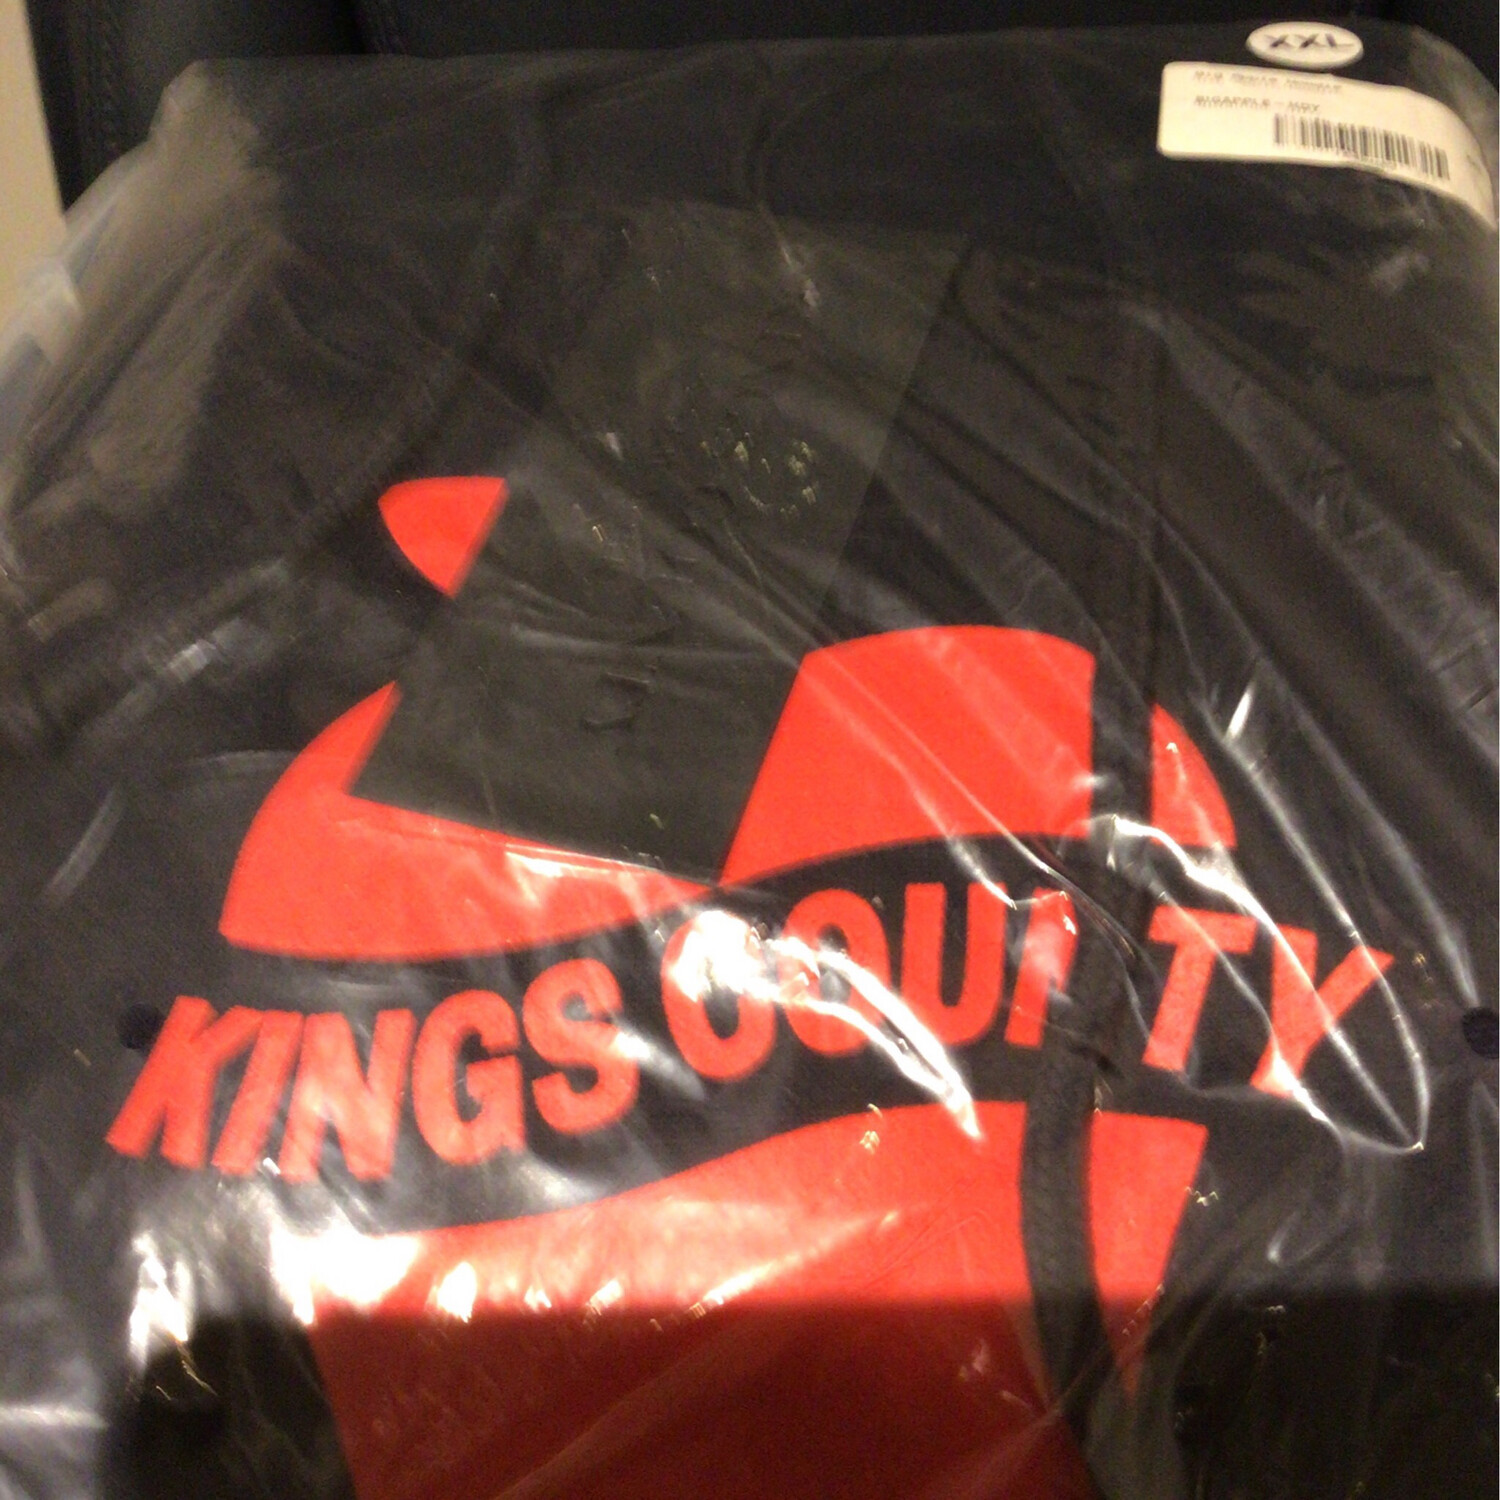 Kings Count Hoody Red On Black - XXL